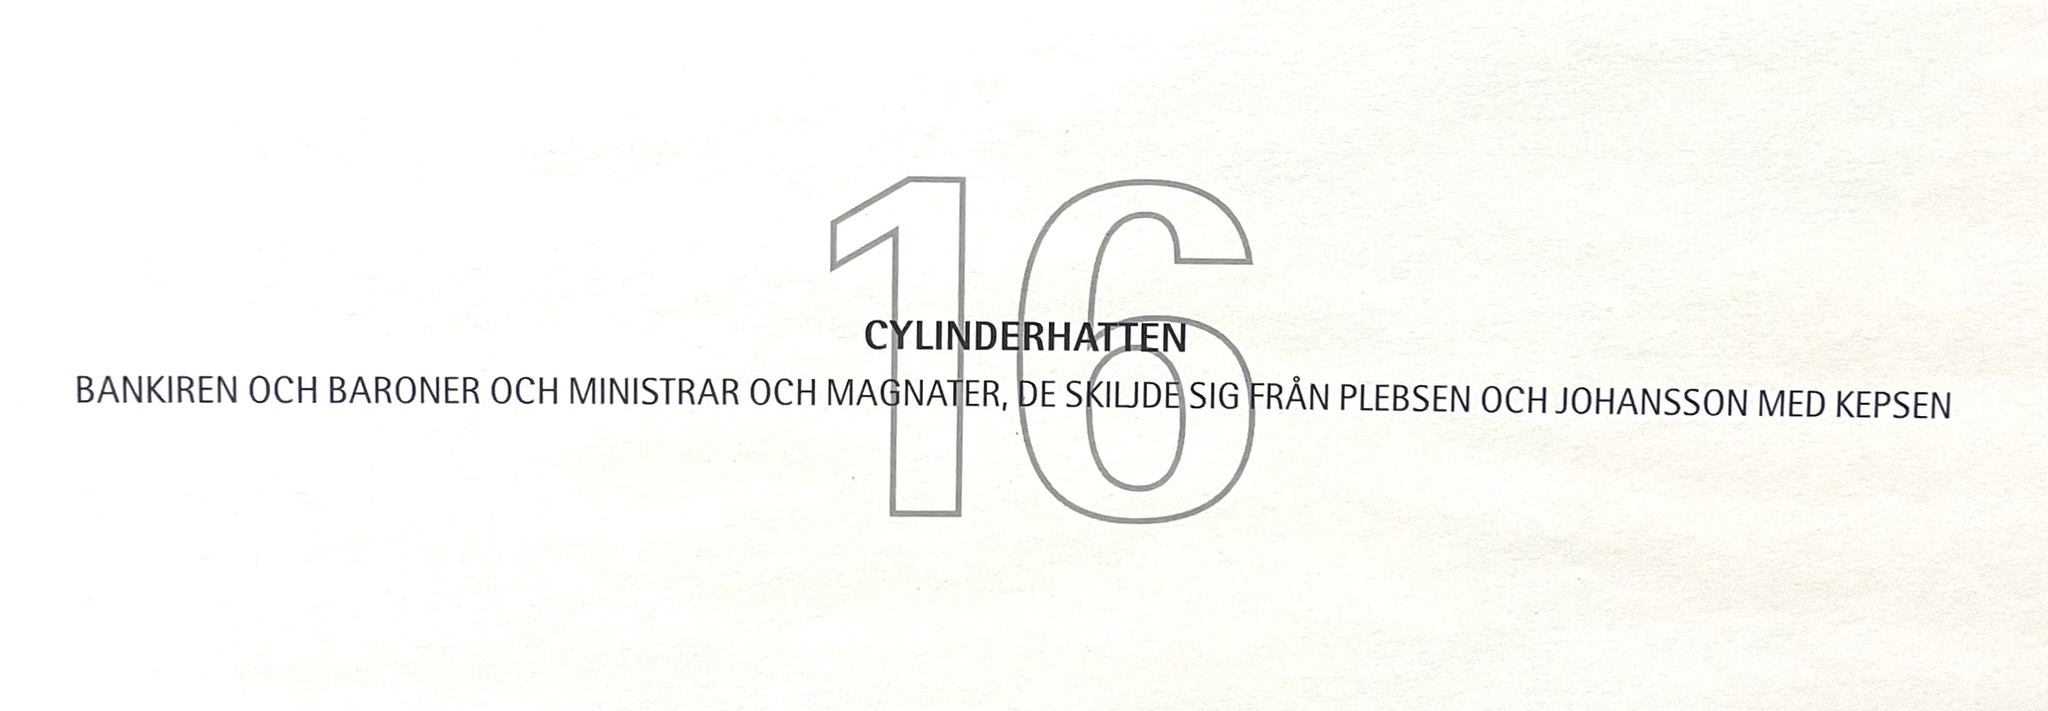 Jussi Taipaleenmäki, Litografi, "Cylinderhatten" 56 x 43,5 cm